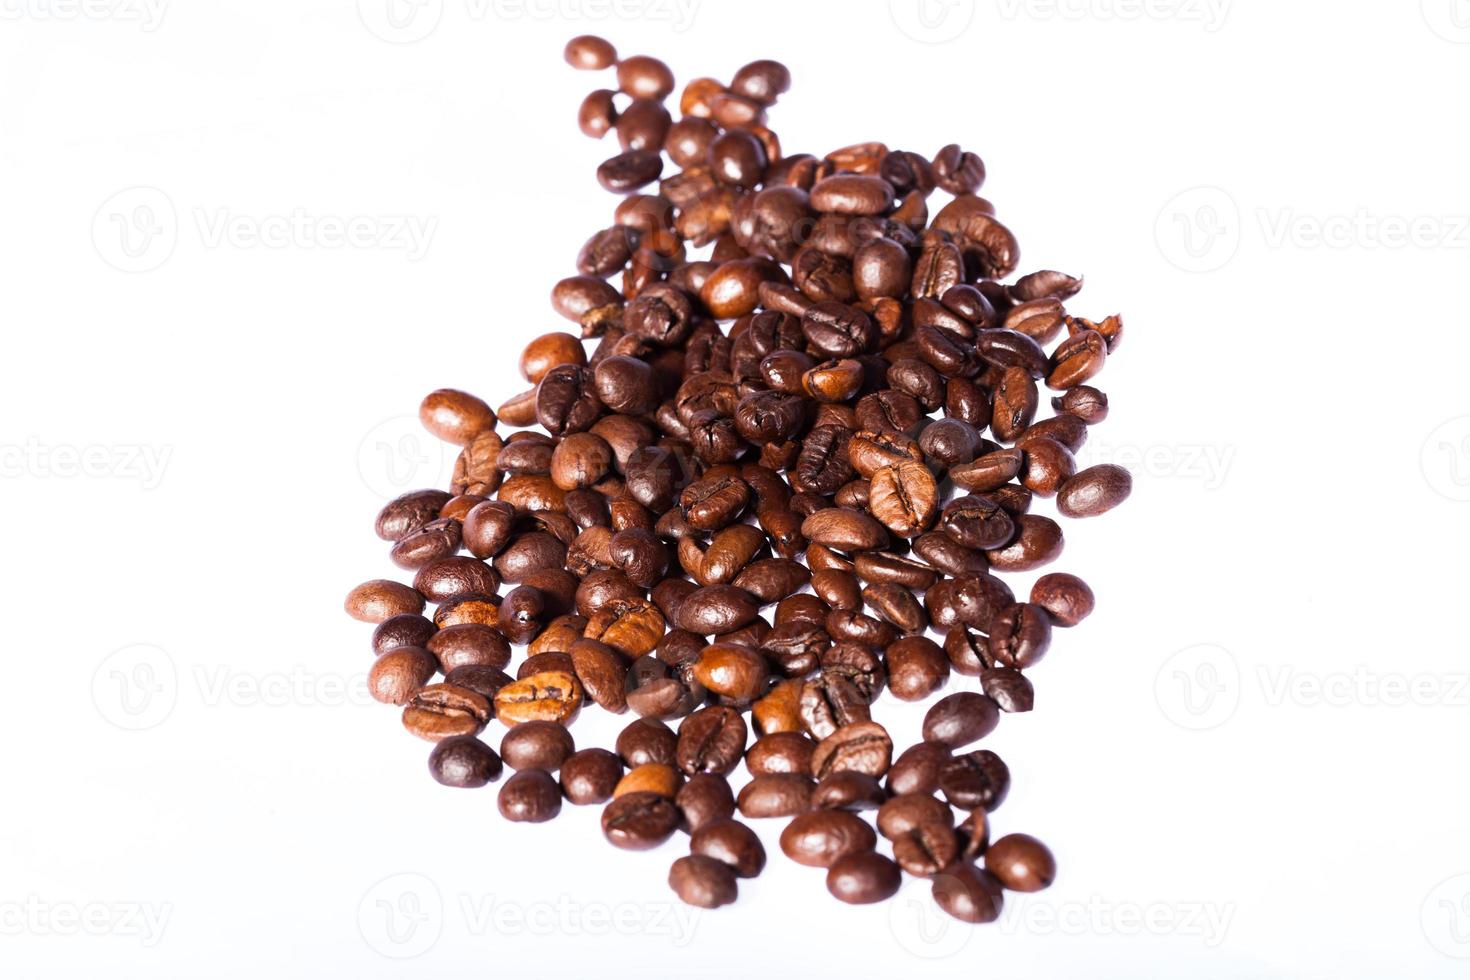 chicchi di caffè isolati su sfondo bianco foto